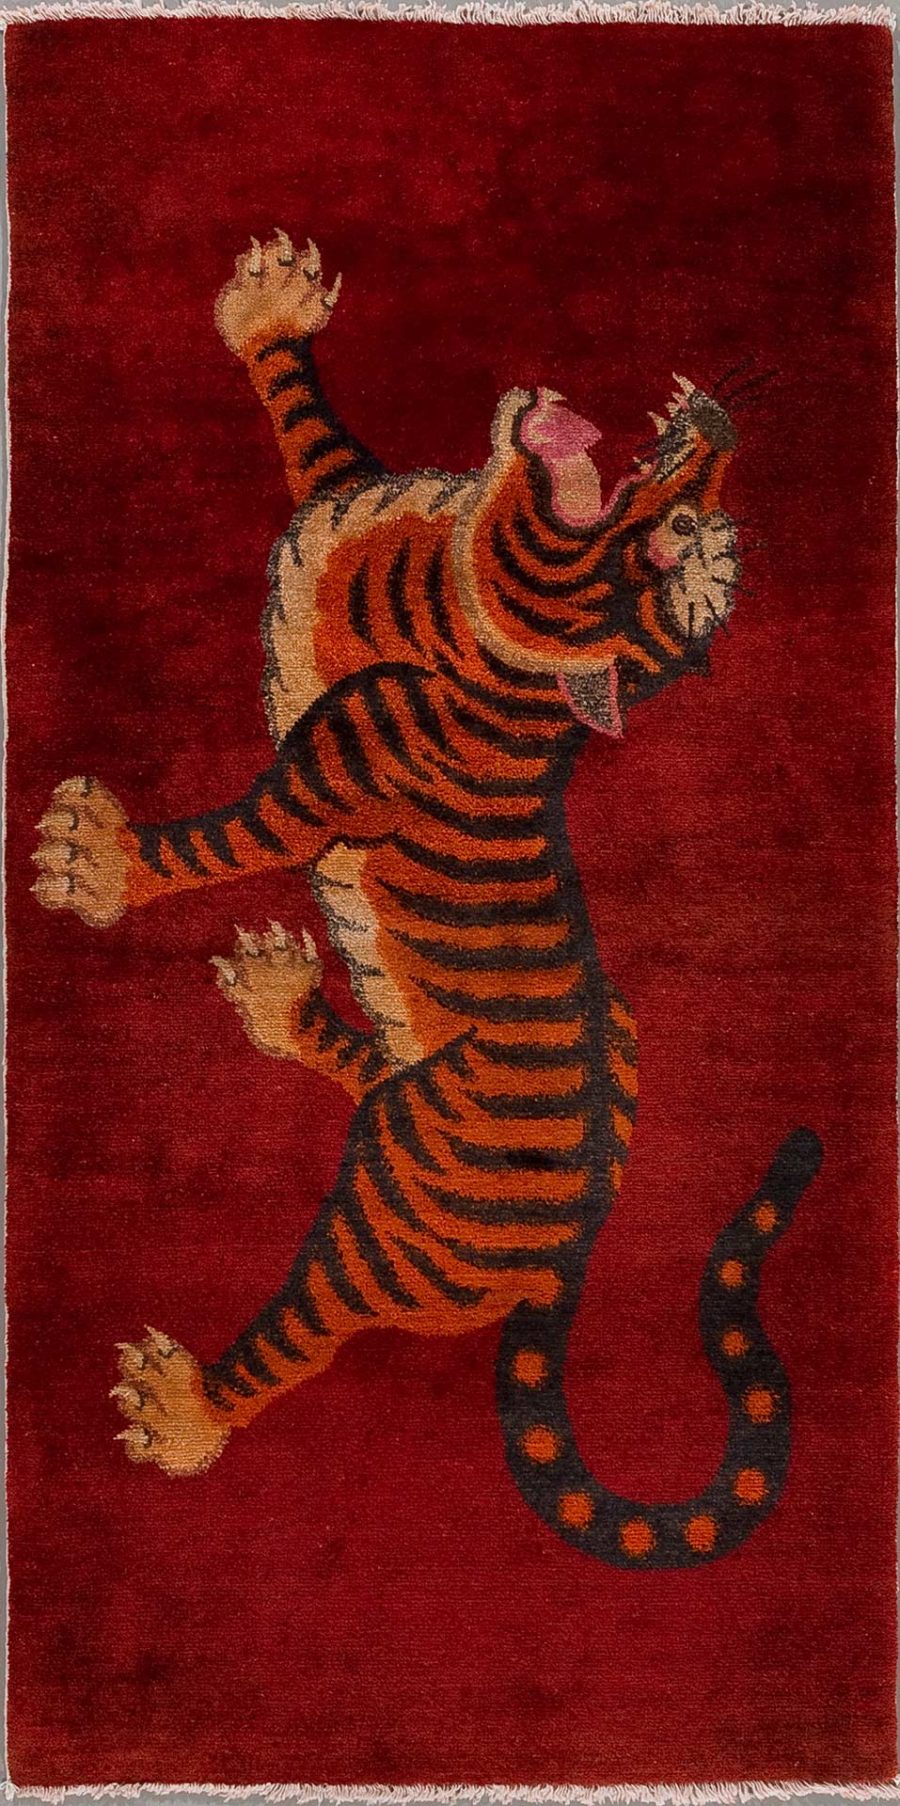 Handgeknüpfter Teppich mit einem aufrecht stehenden Tiger auf bordeauxrotem Hintergrund, der eine Pfote aggressiv erhebt und Mund und Augen in einem Ausdruck des Brüllens oder Fauchens öffnet.